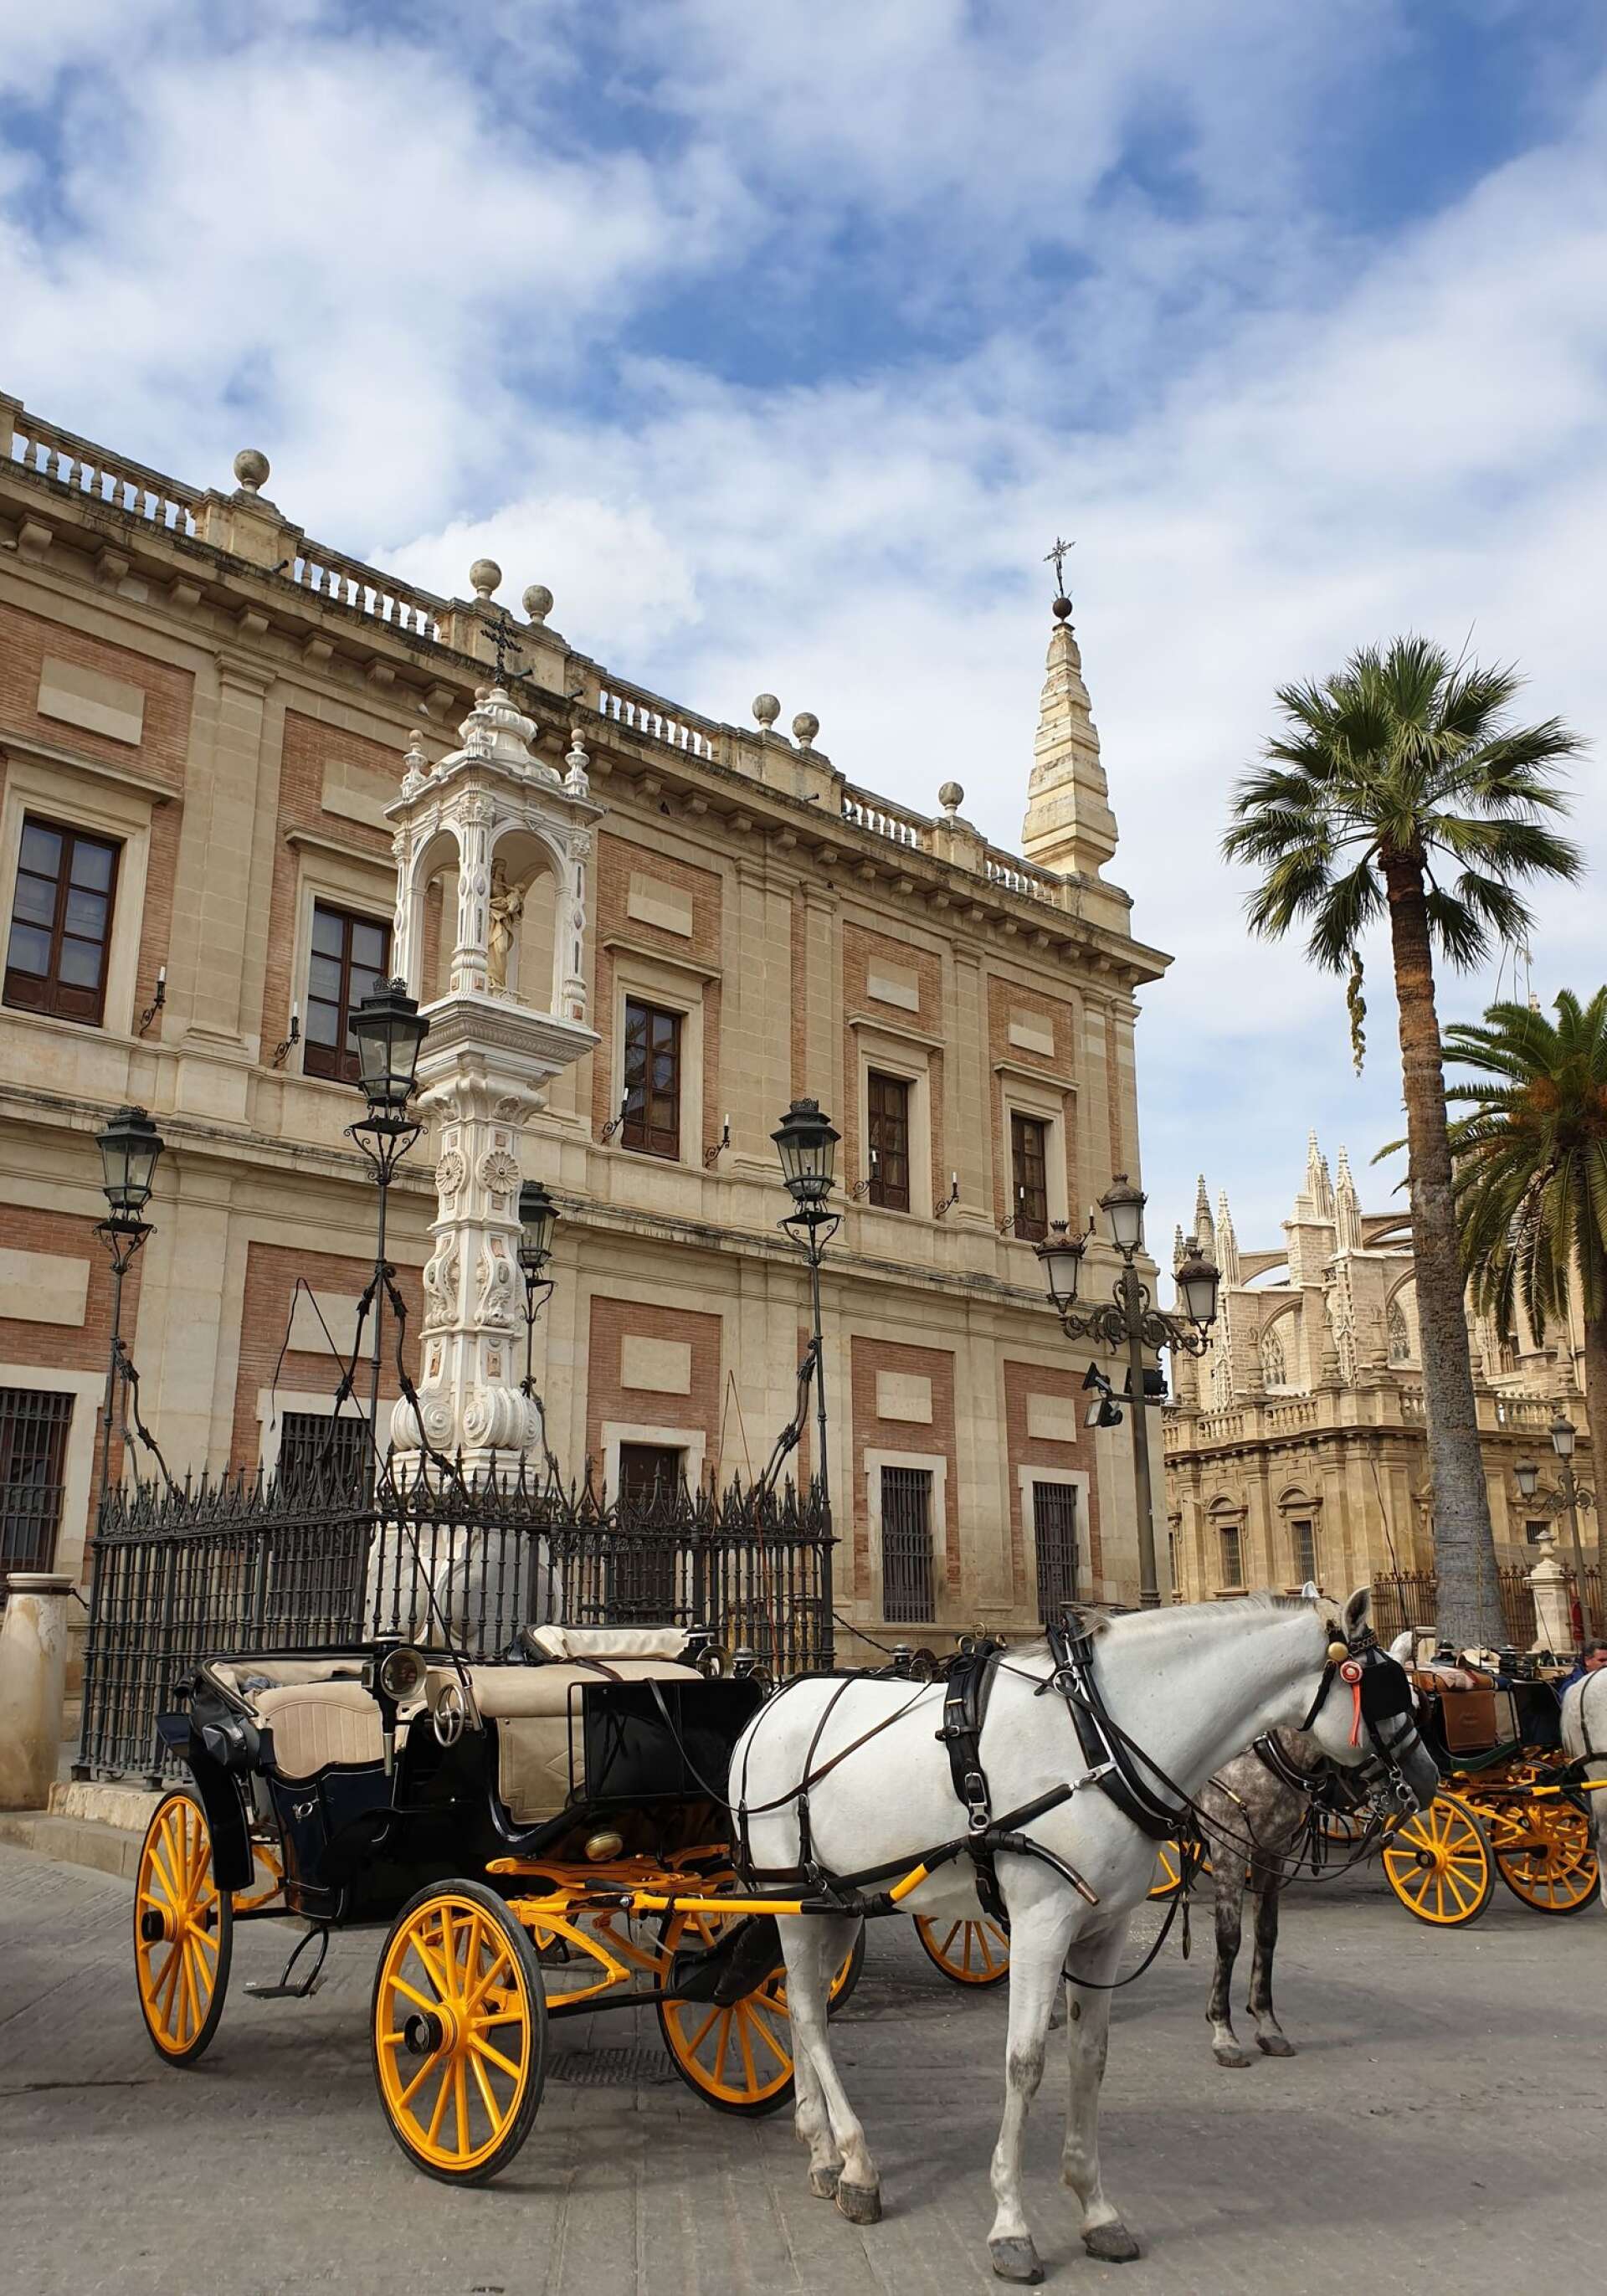 Hästar och palmer i Sevilla, det var på väg dit som Felicia Johansson kände sig som mest ensam.